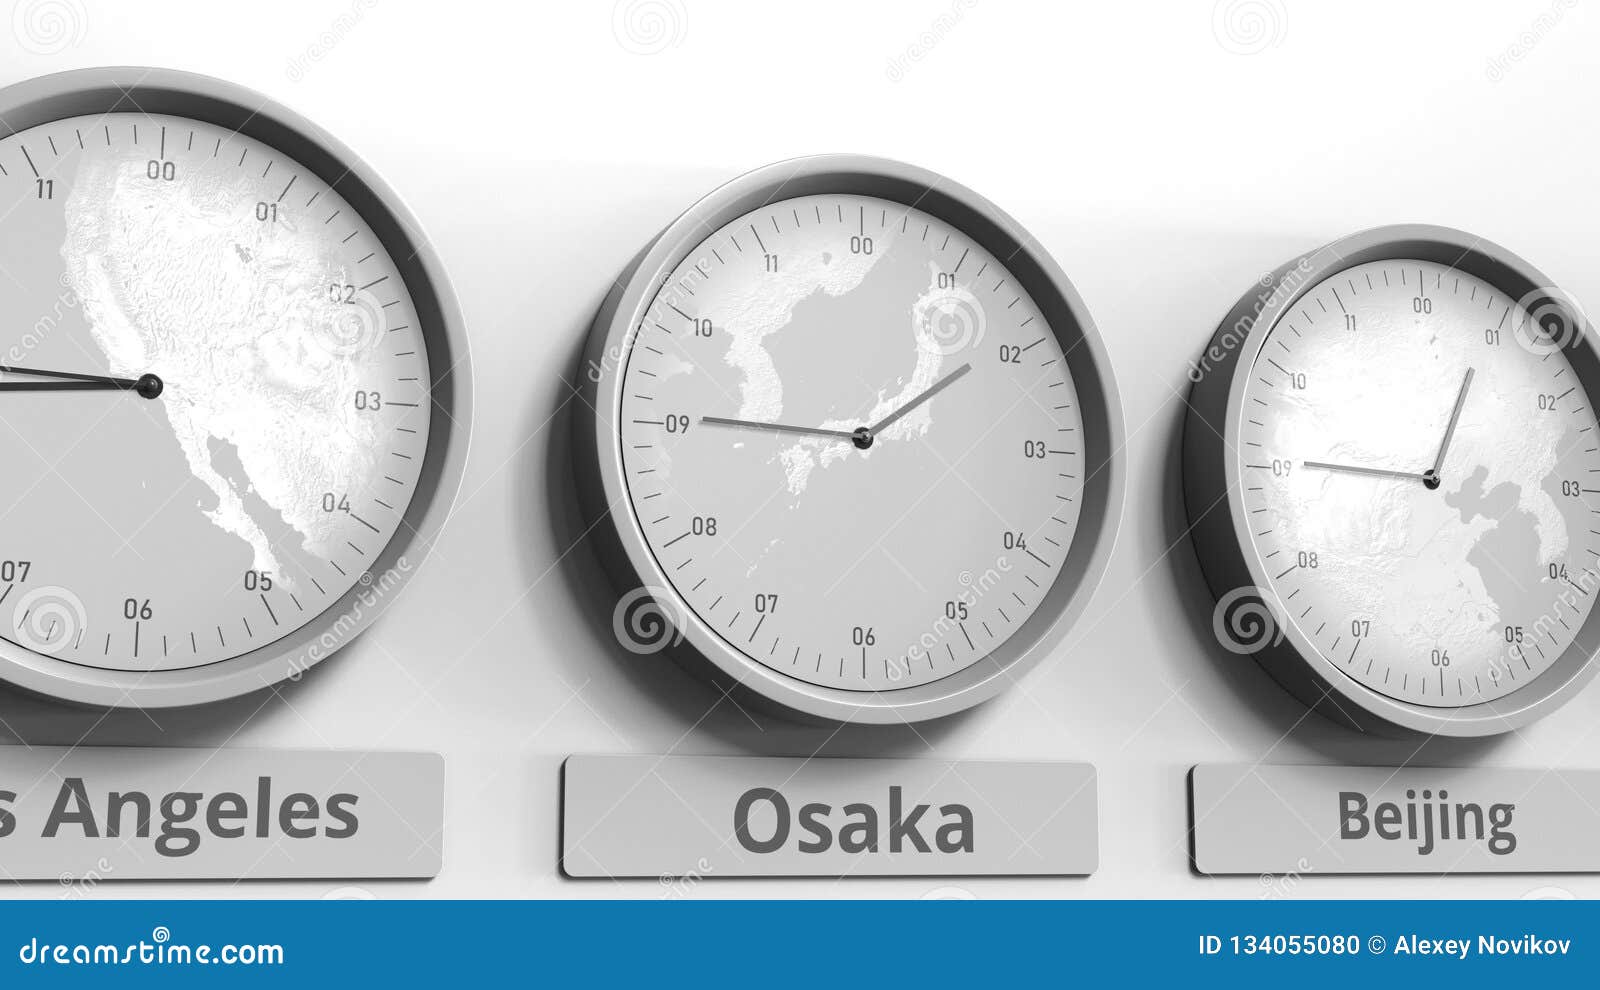 Лос анджелес время сейчас разница. "Часы", Осака, Япония. Местное время рисунок. Часы Сантьяго описание. Friends in different time Zones.